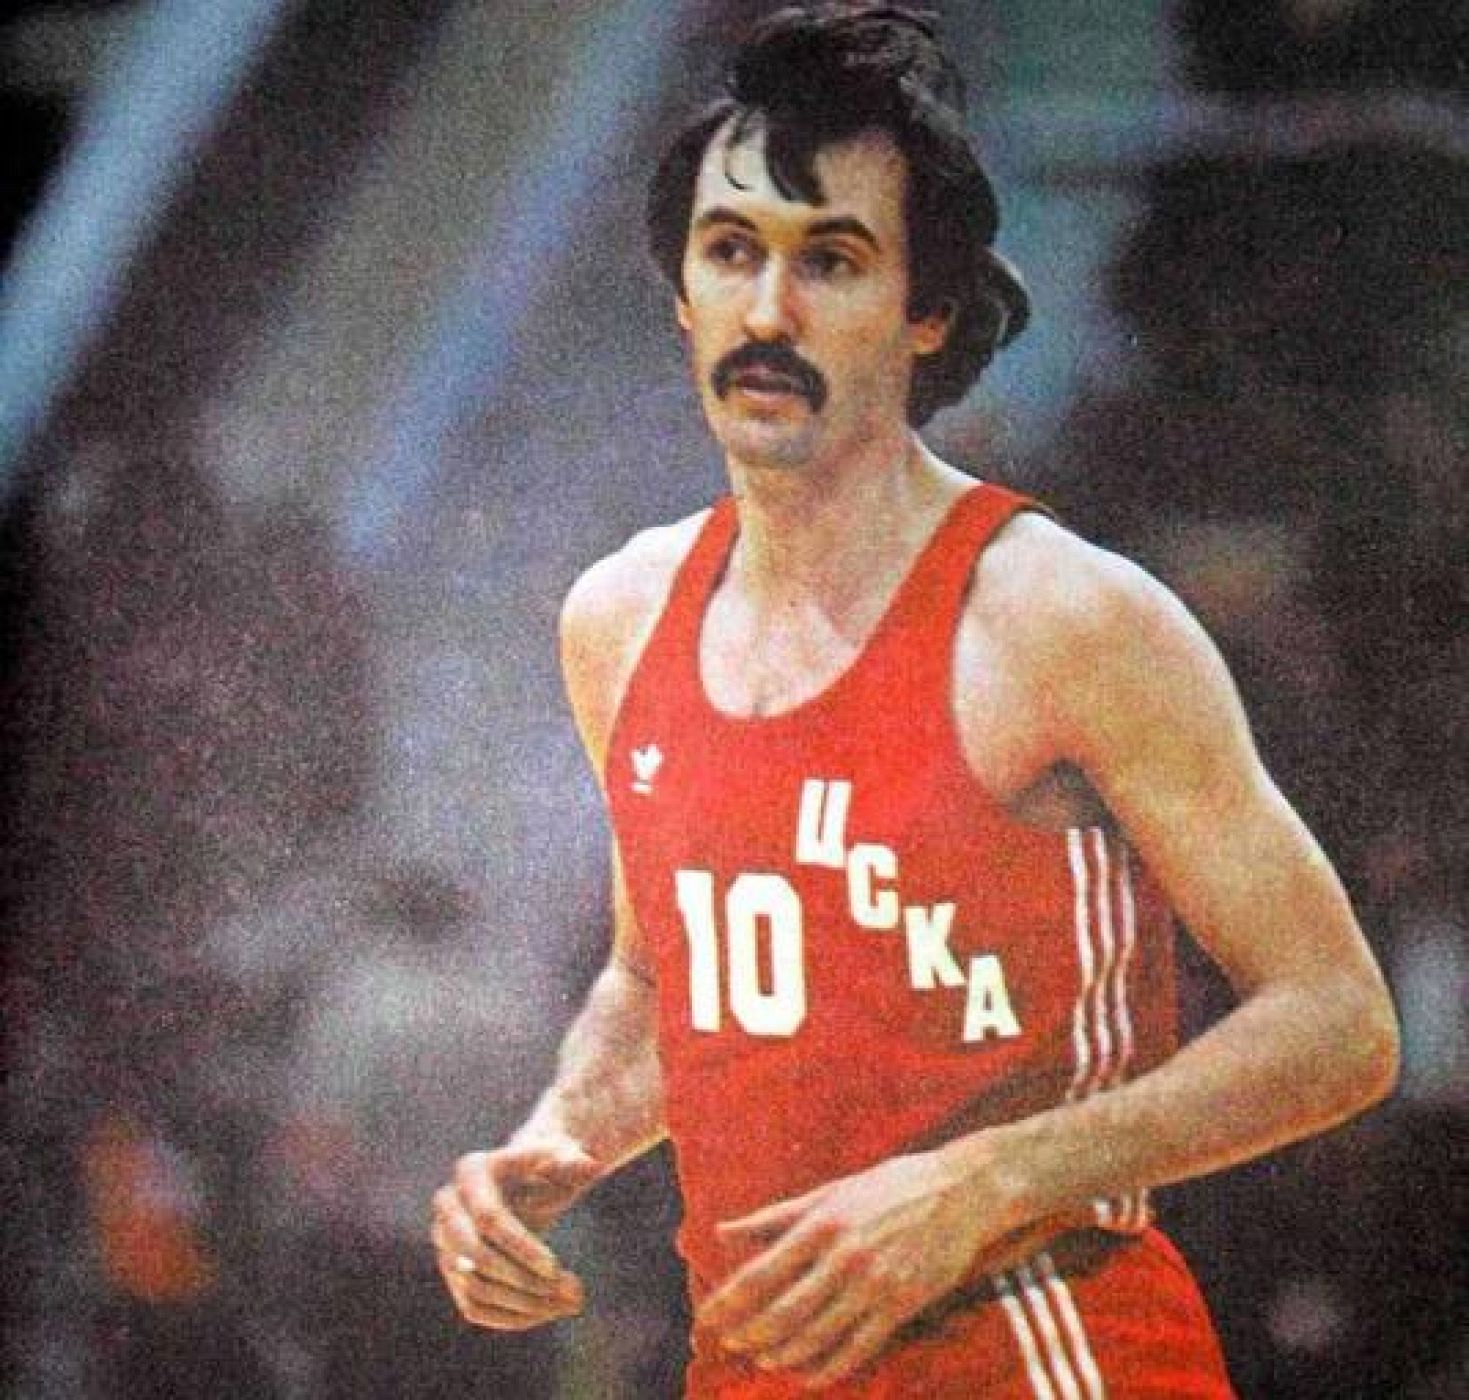 Baloncesto | Muere el ruso Serguéi Belov, leyenda del baloncesto - RTVE.es